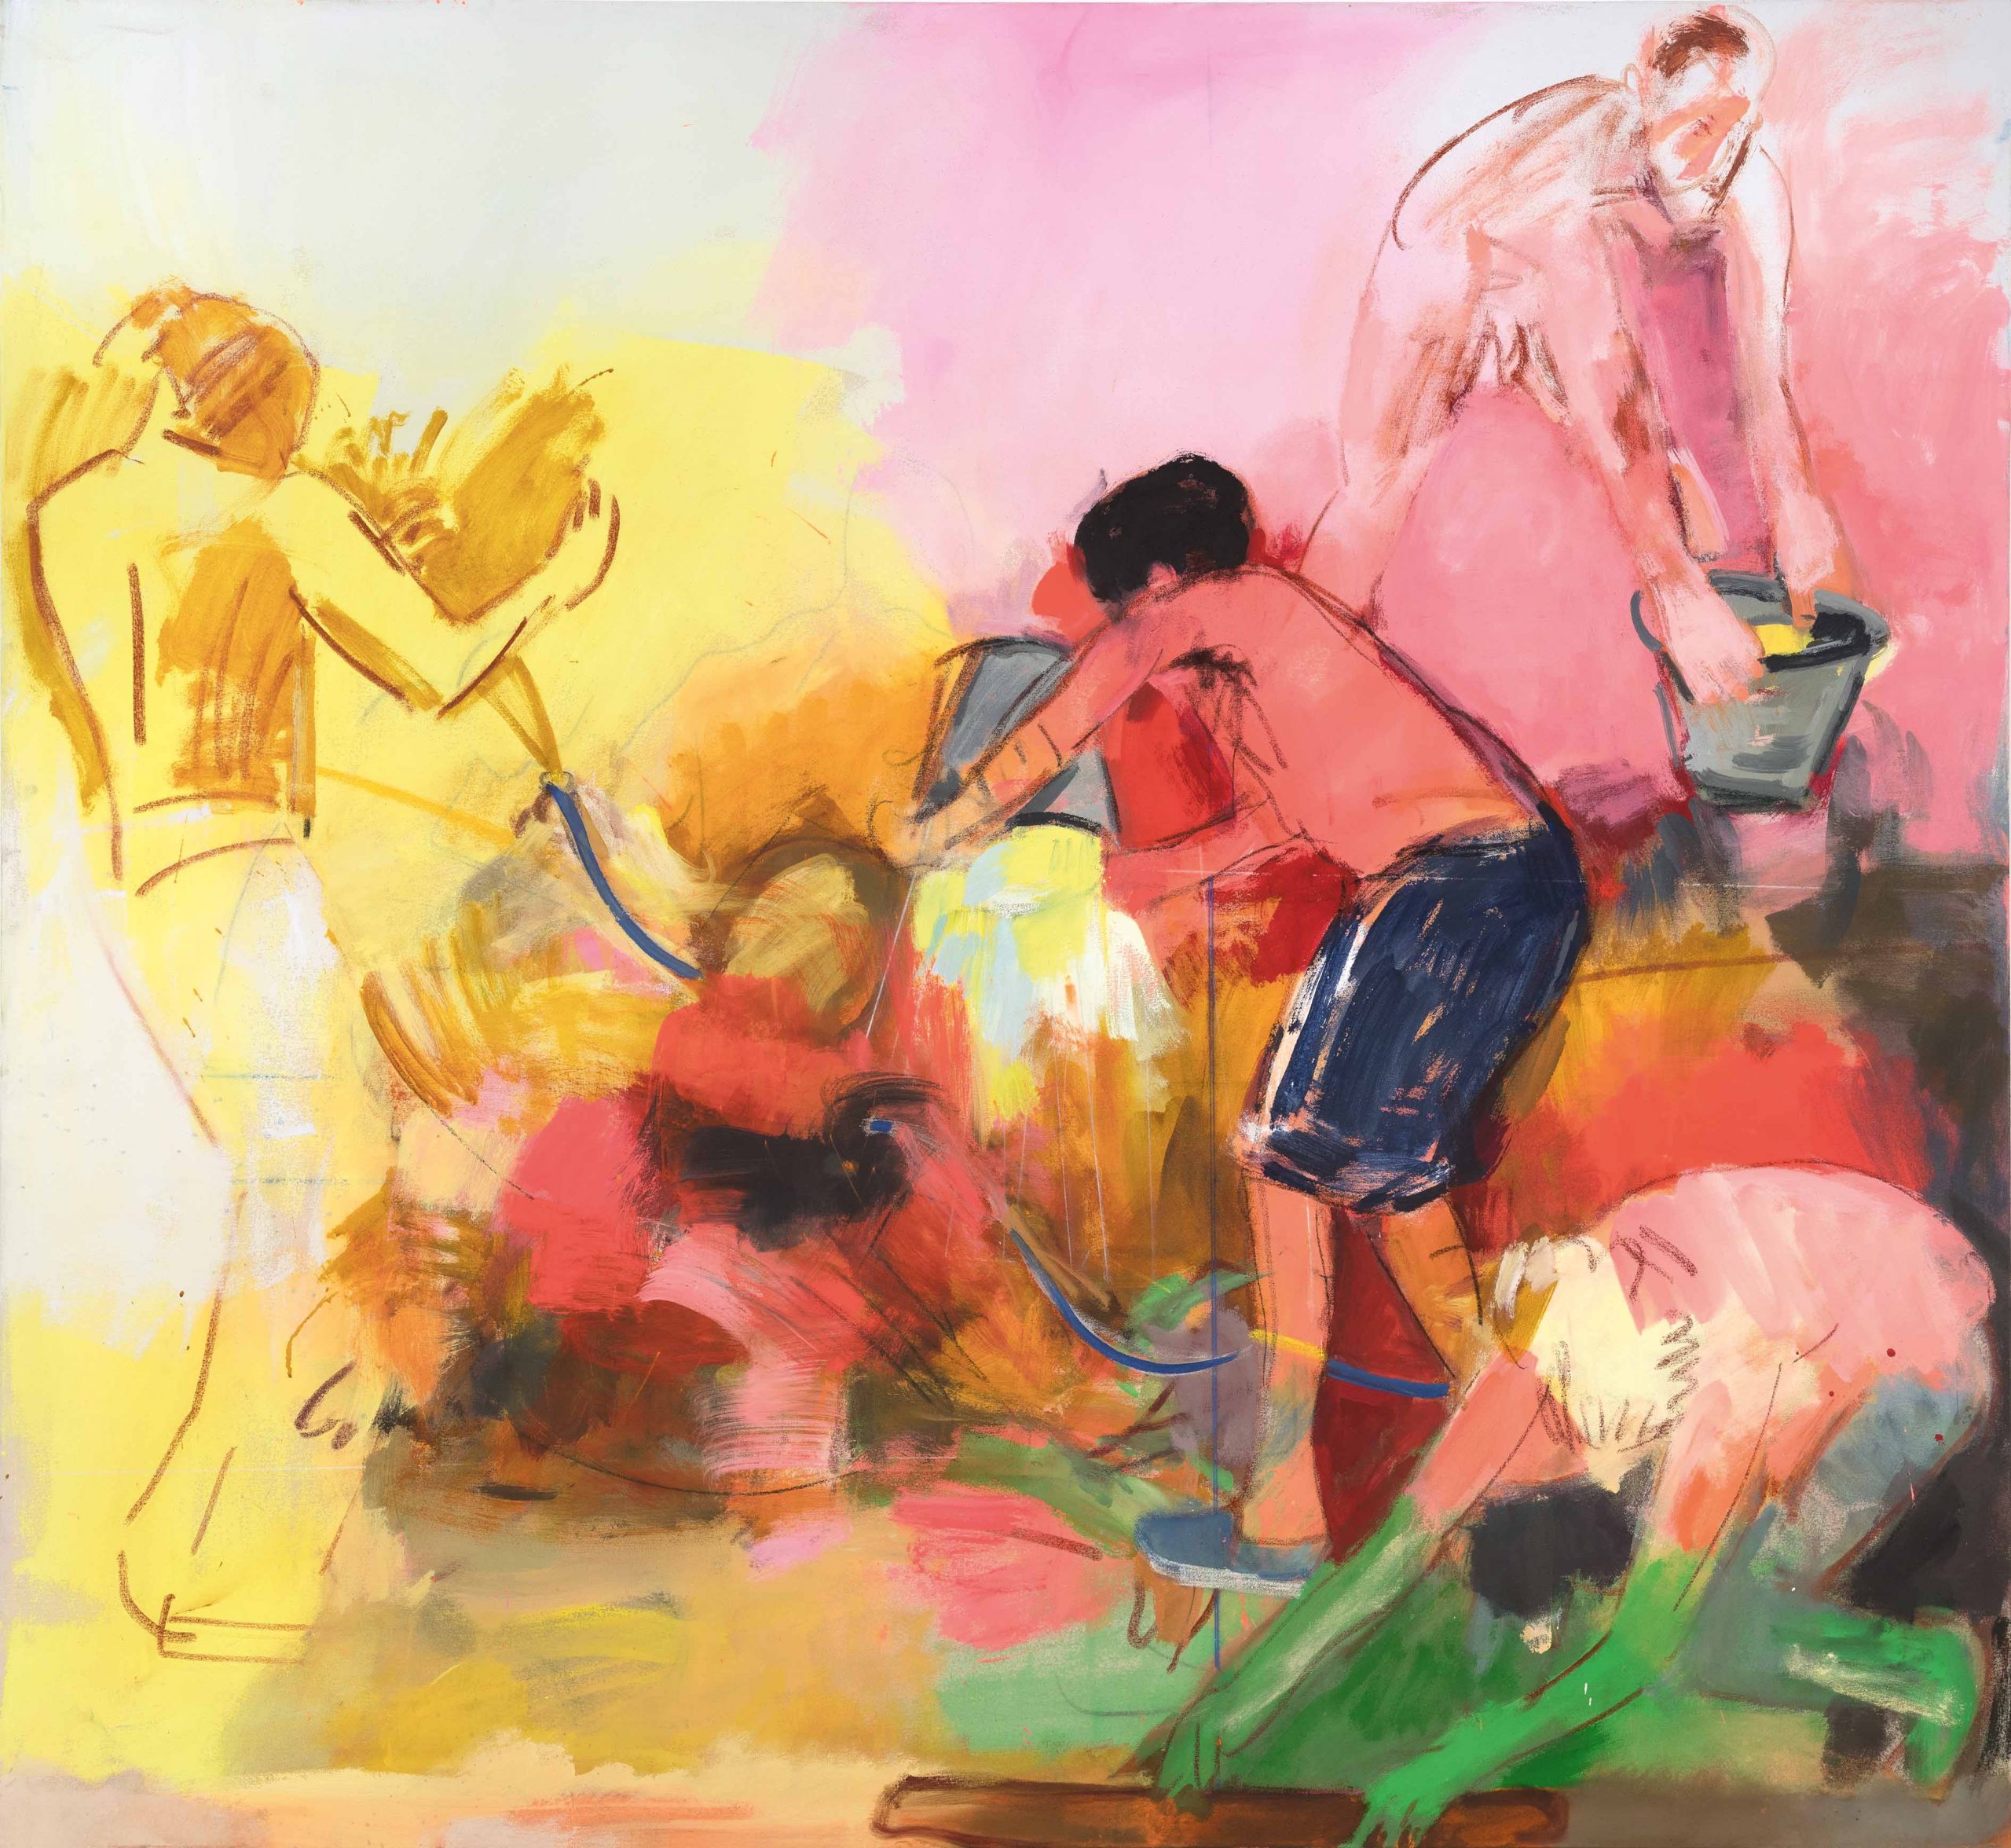 ציור אדום – ארבעה גברים ודליים, טכניקה מעורבת על בד, 2021